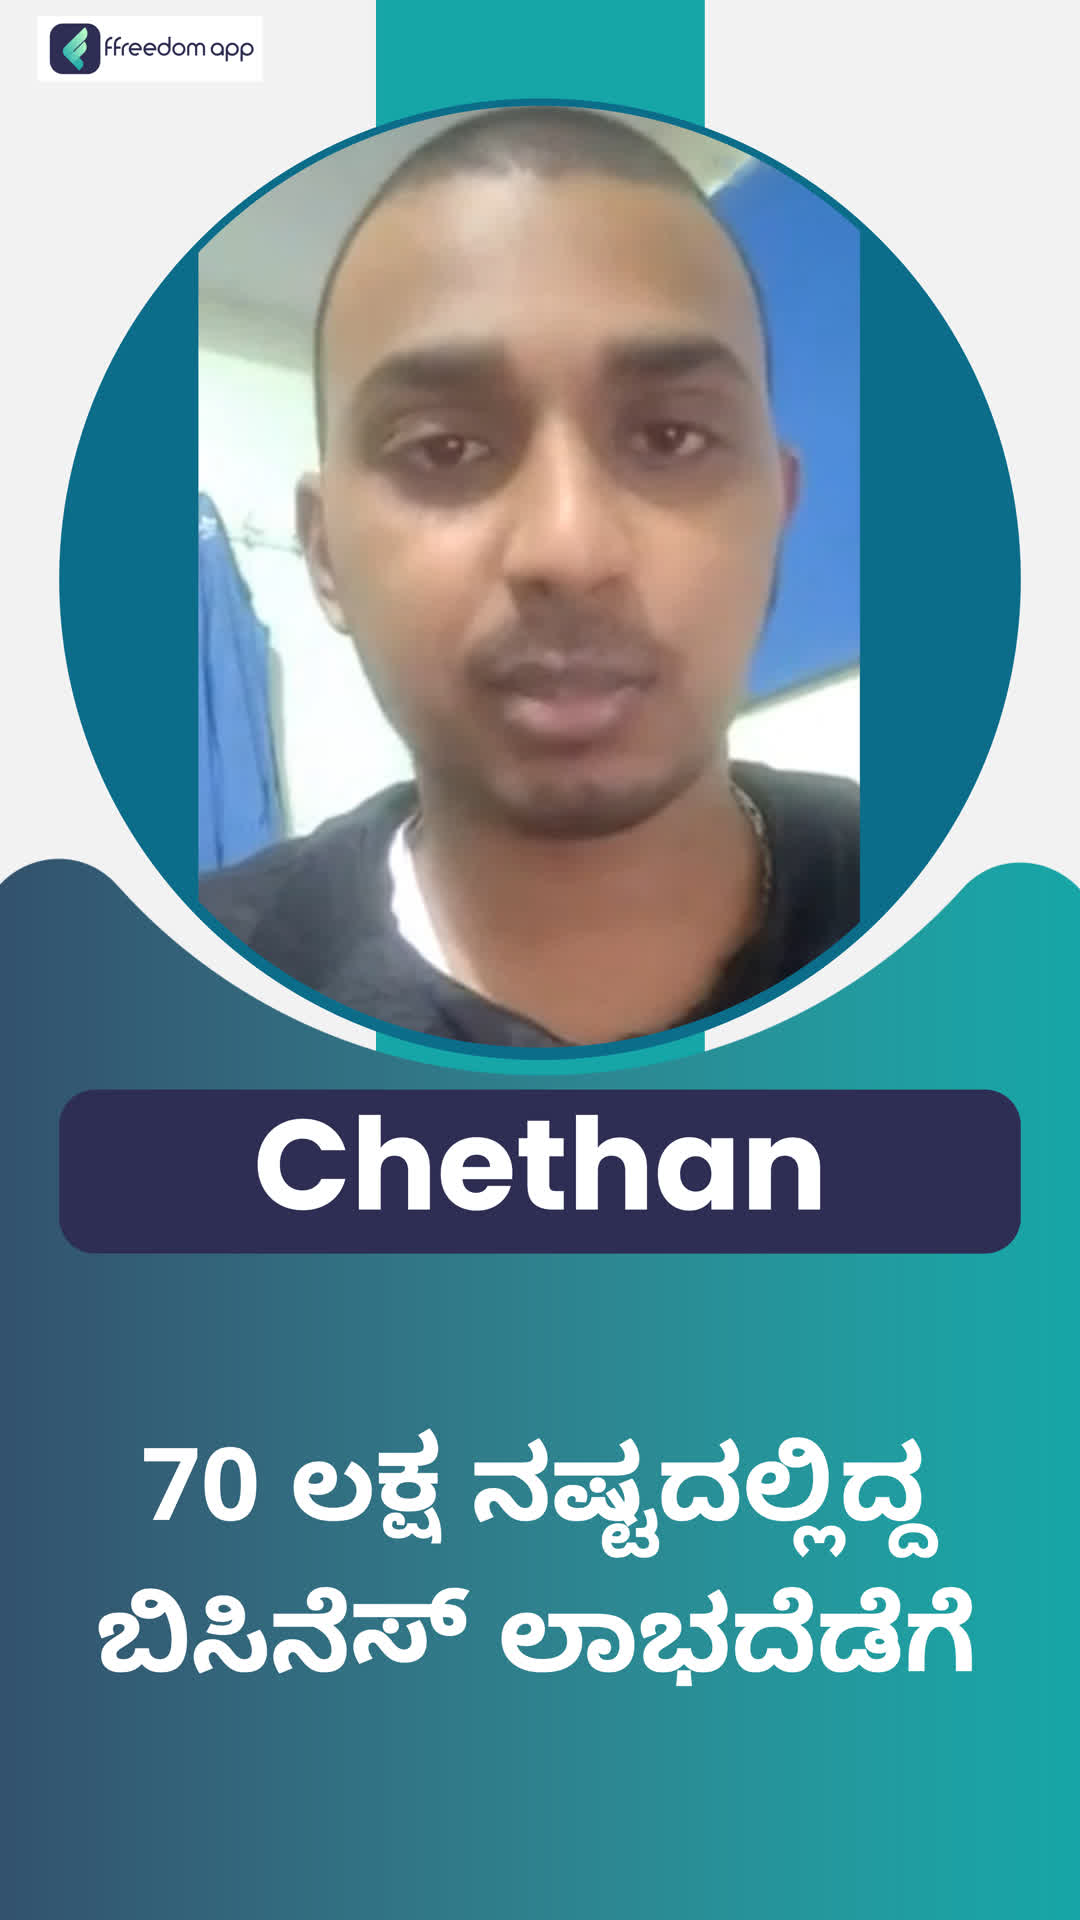 chethan's Honest Review of ffreedom app - Bengaluru City ,Karnataka